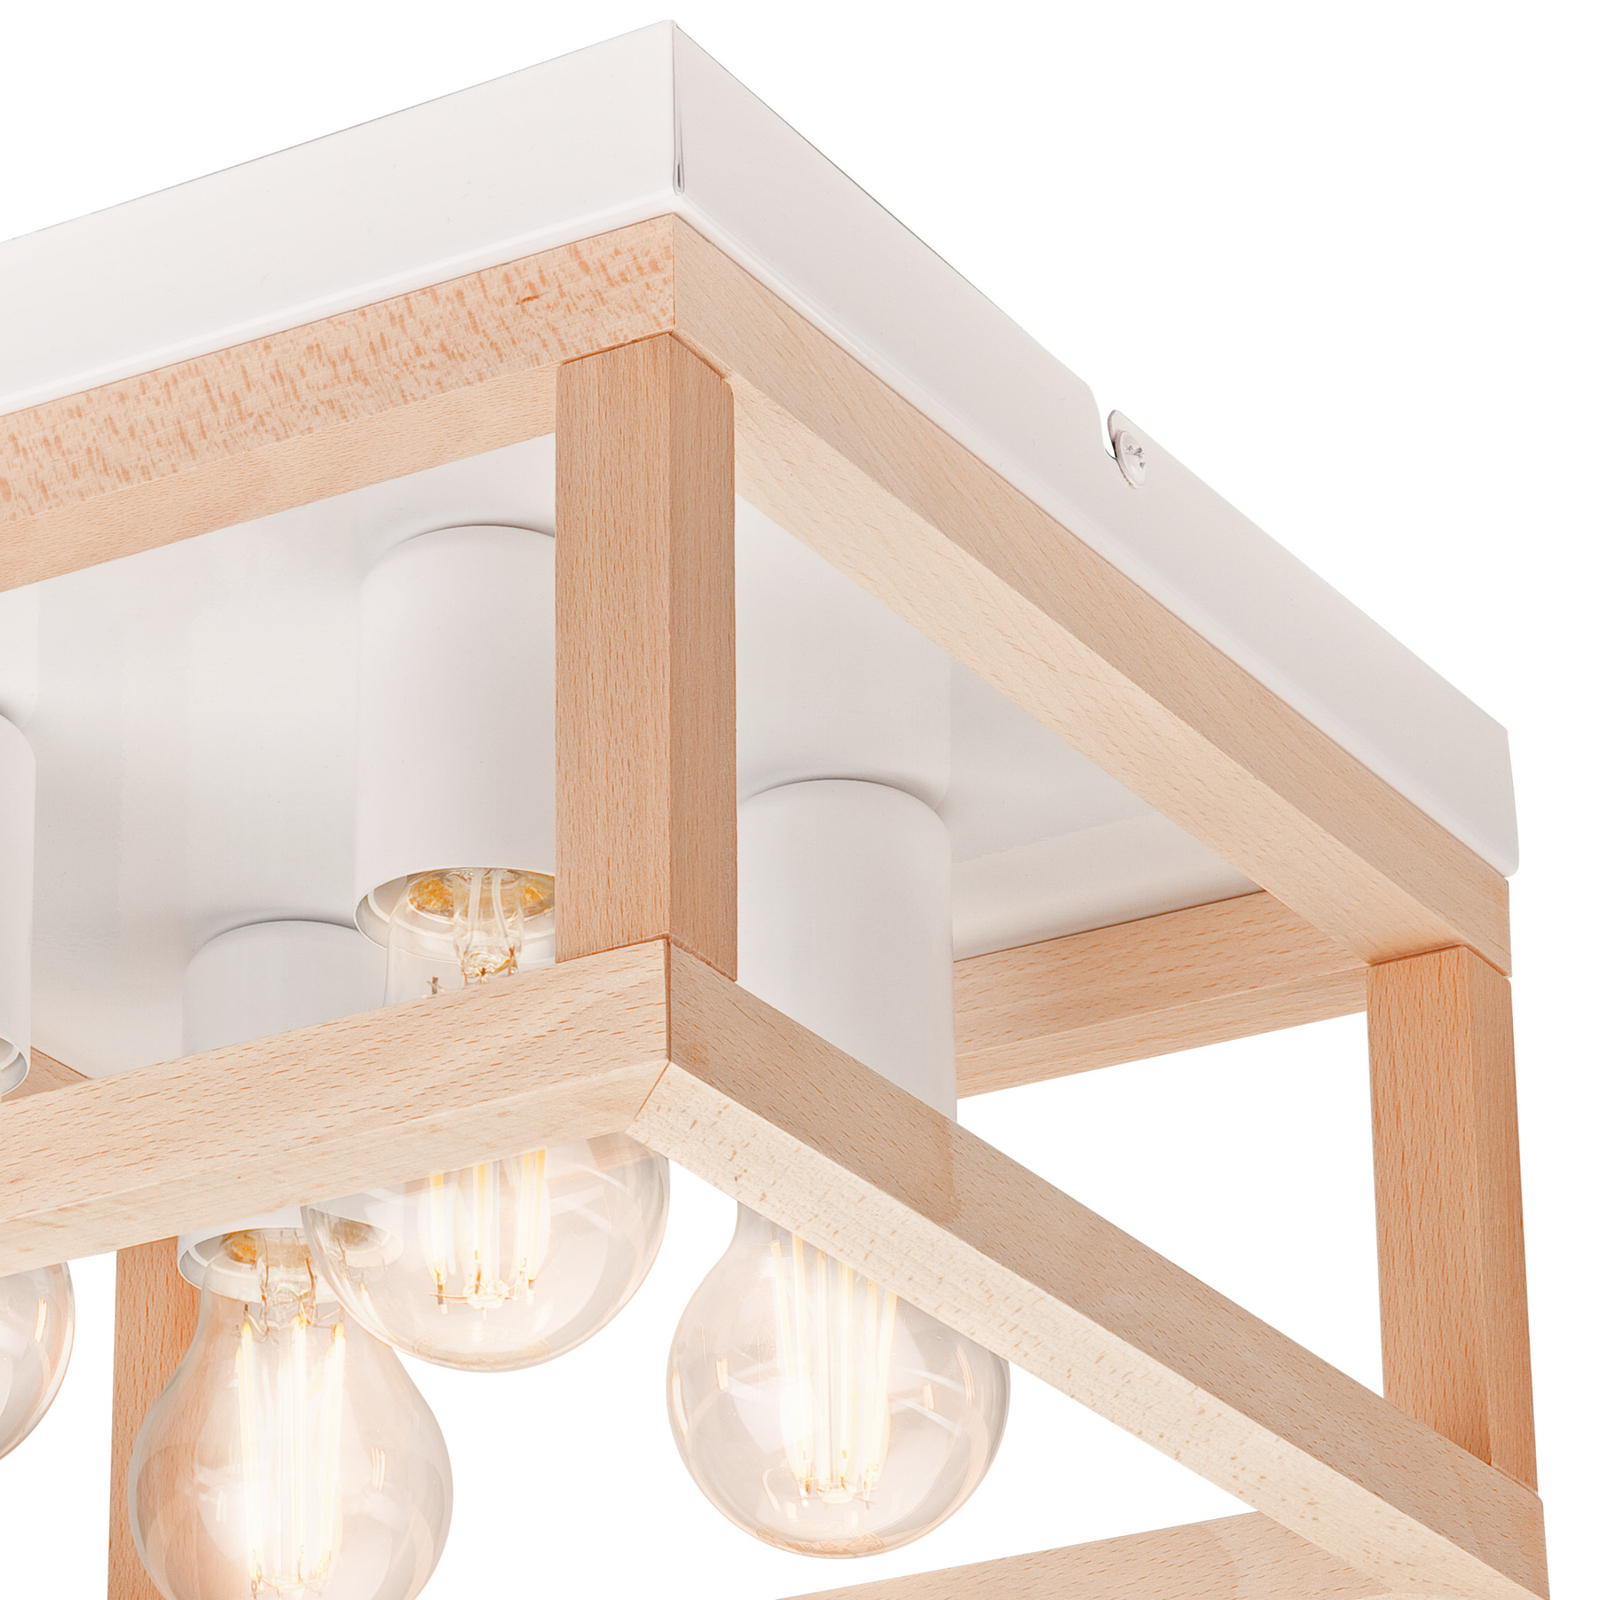 Envostar Phelan ceiling light 4-bulb wood/white